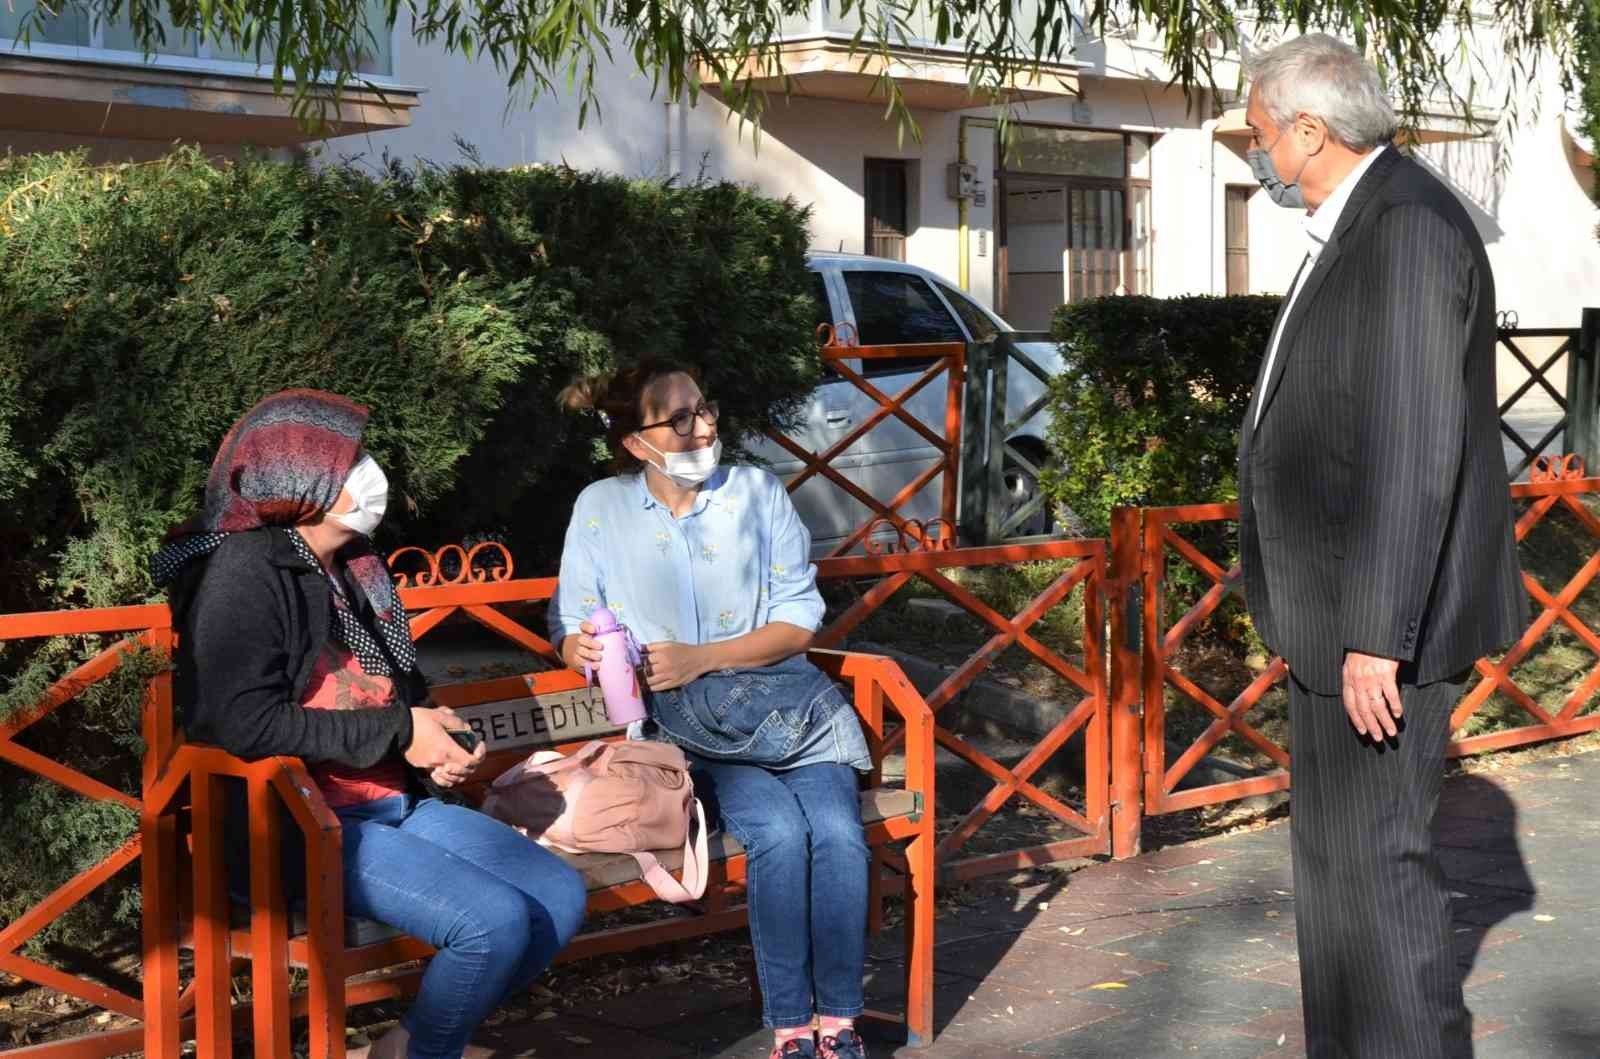 Başkan Bakkalcıoğlu’nun esnaf ziyaretleri devam ediyor #bilecik